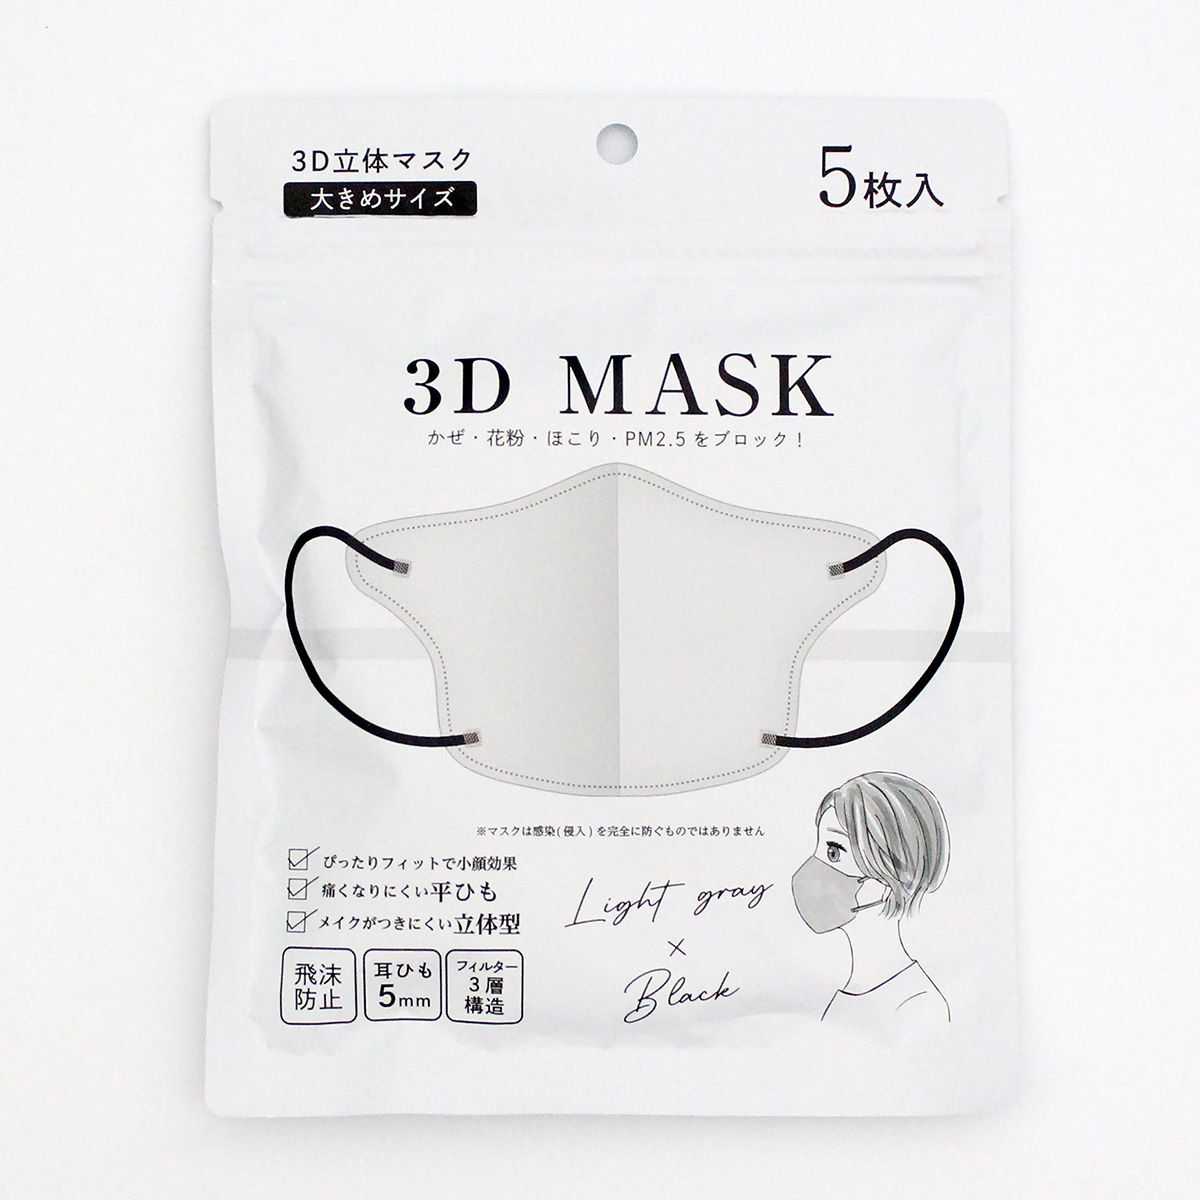 3D立体マスク 不織布マスク ライトグレーxブラック 大きめ 5枚入り 1523/347005